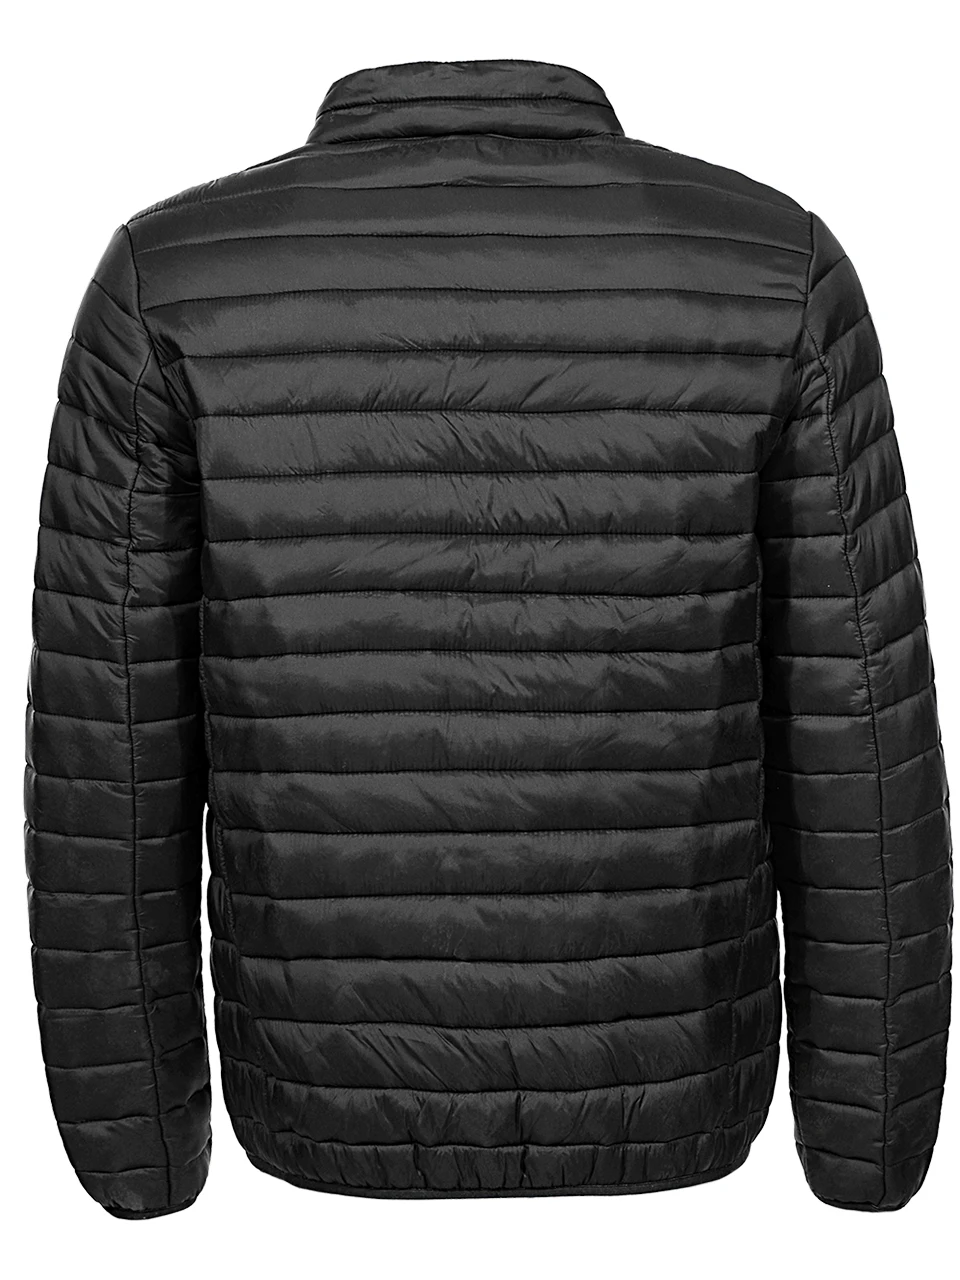 GLO-STORY мужские новые весенние легкие тонкие стеганые куртки пальто мужские базовые тонкие зимние куртки одежда MMA-7120 21 22 23